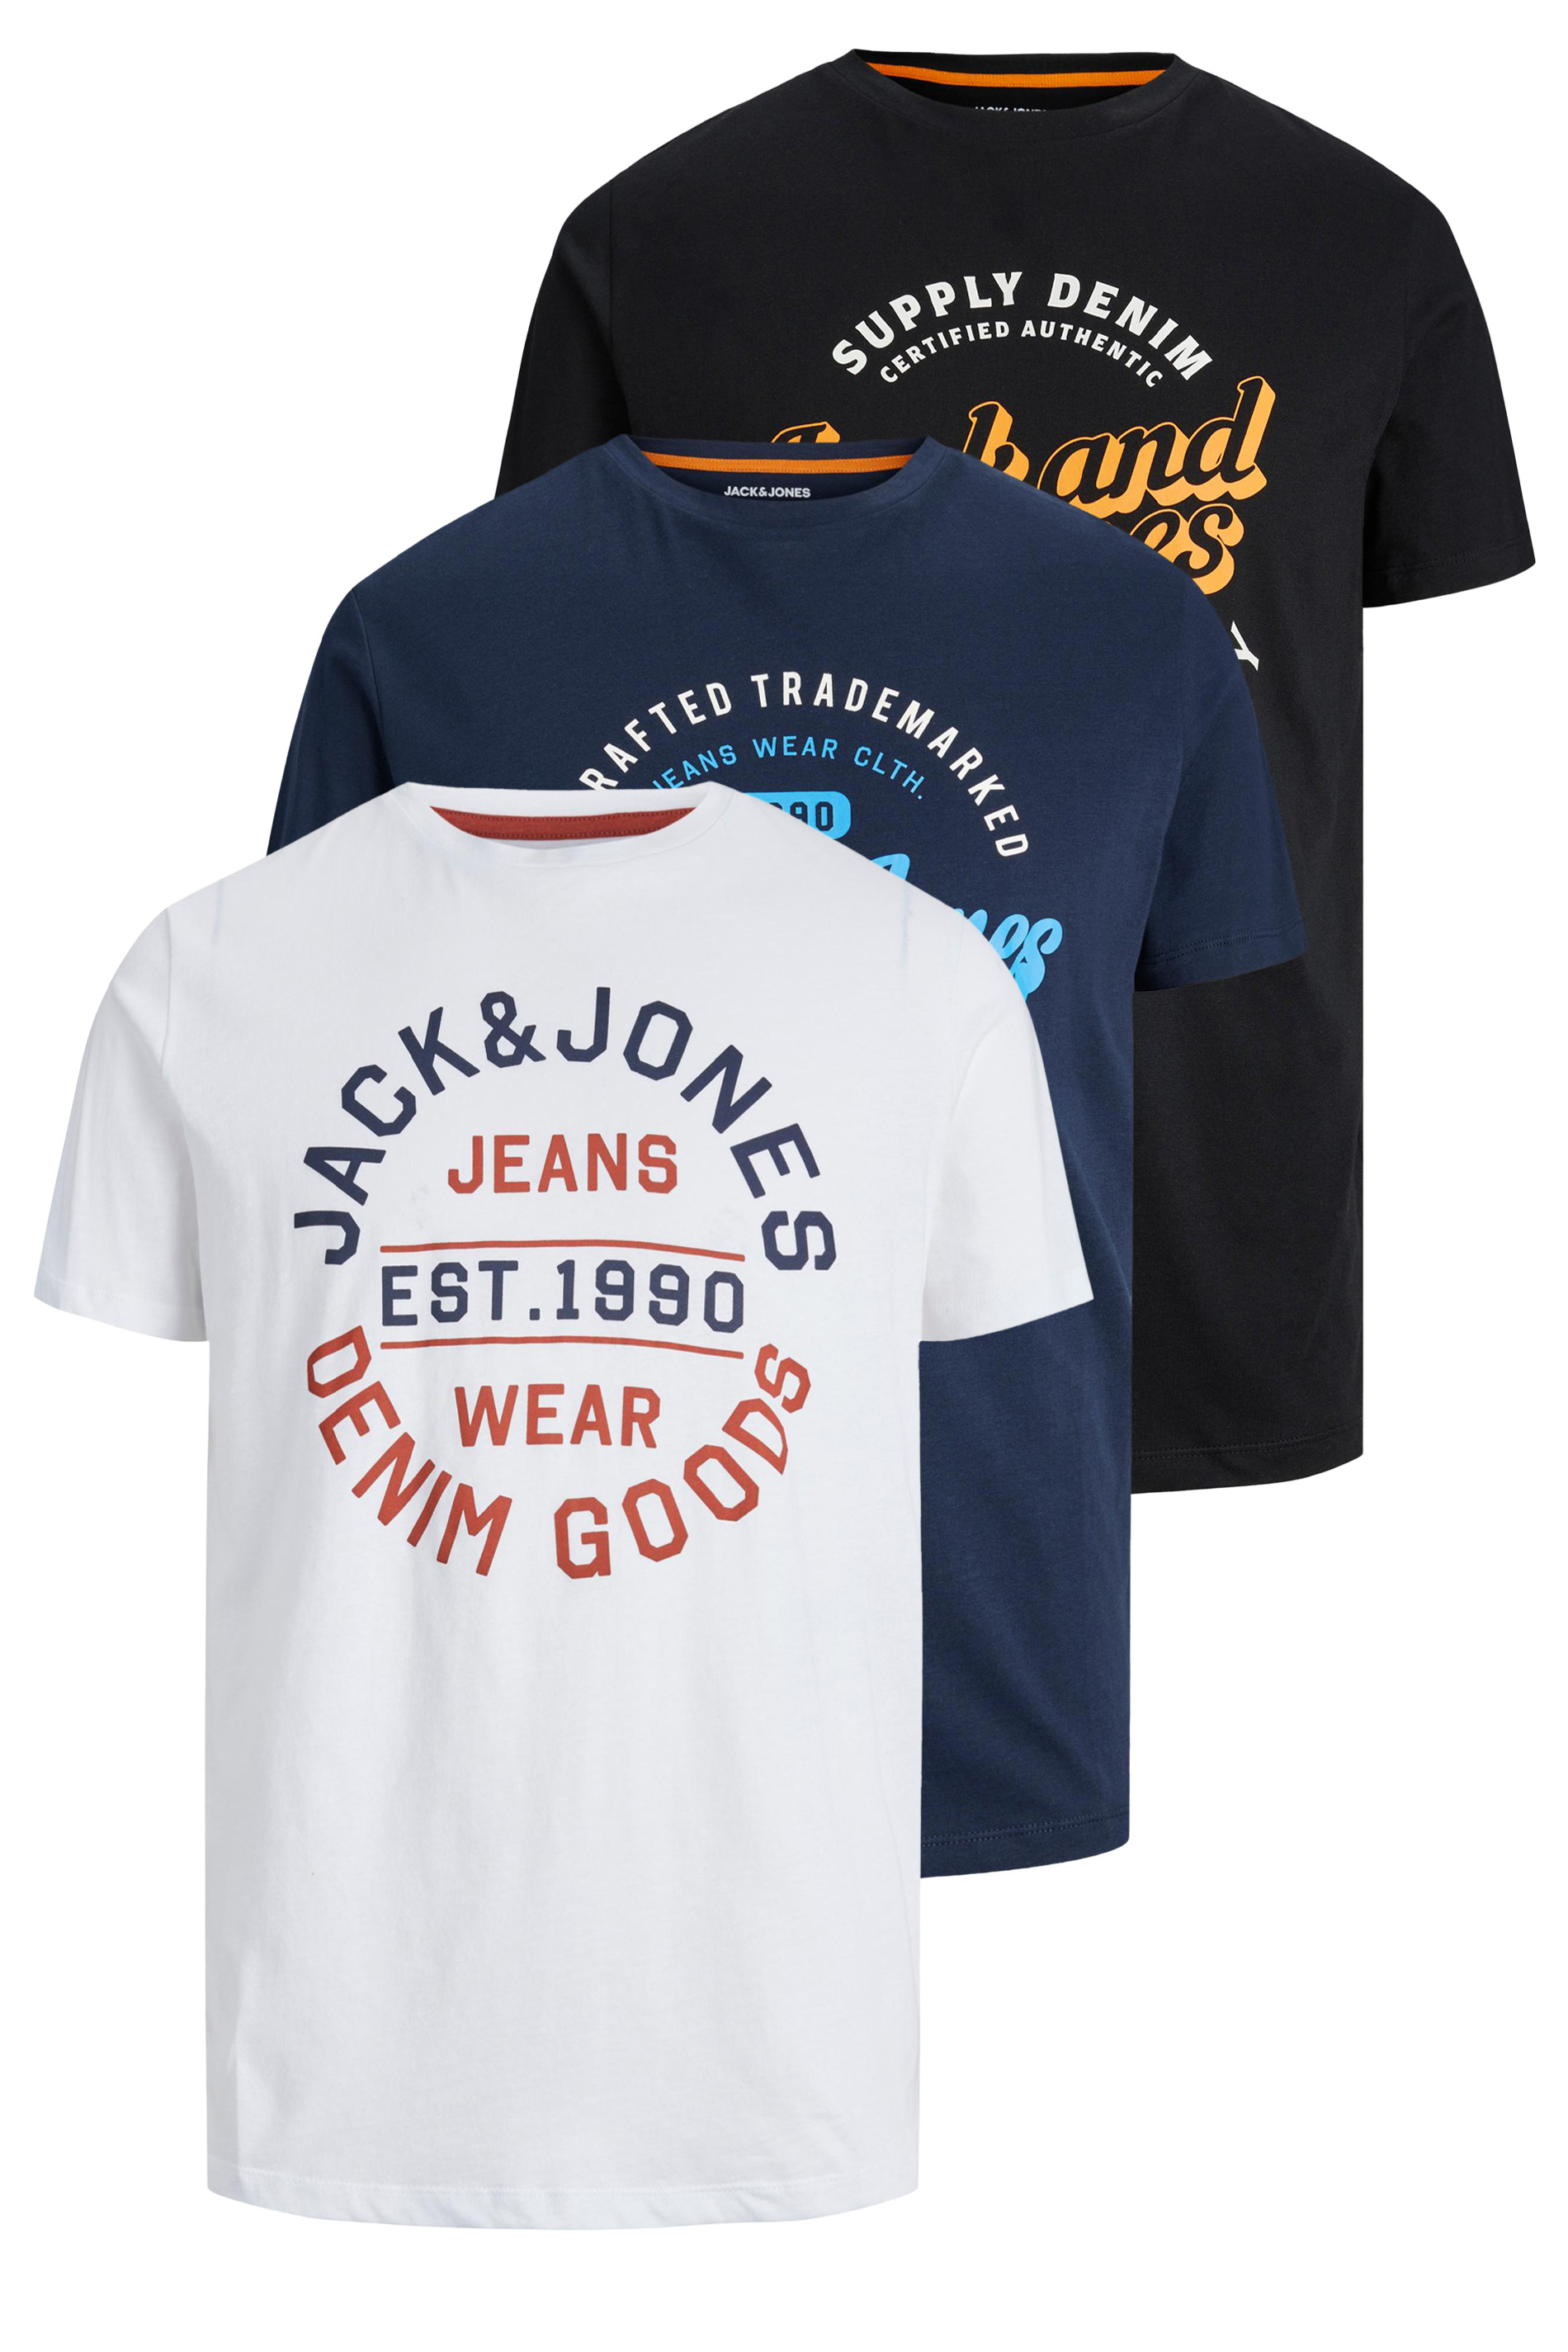 JACK & JONES Big & Tall 3 PACK White Logo T-Shirts | BadRhino  3